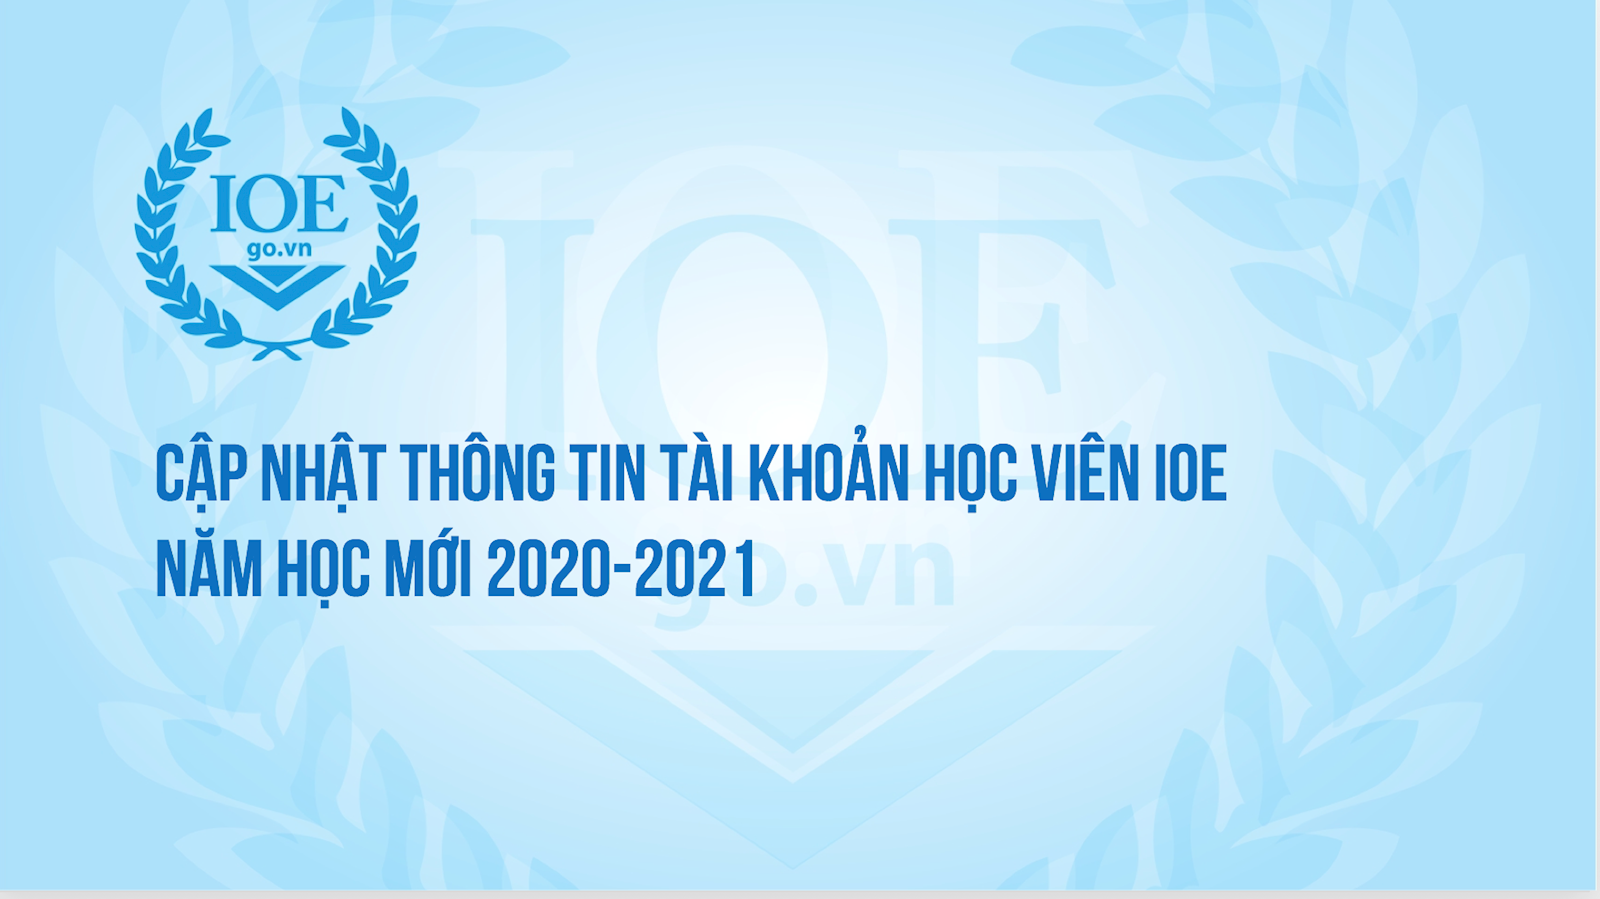 [Thông báo] Về việc cập nhật thông tin tài khoản học viên IOE năm học mới 2020-2021